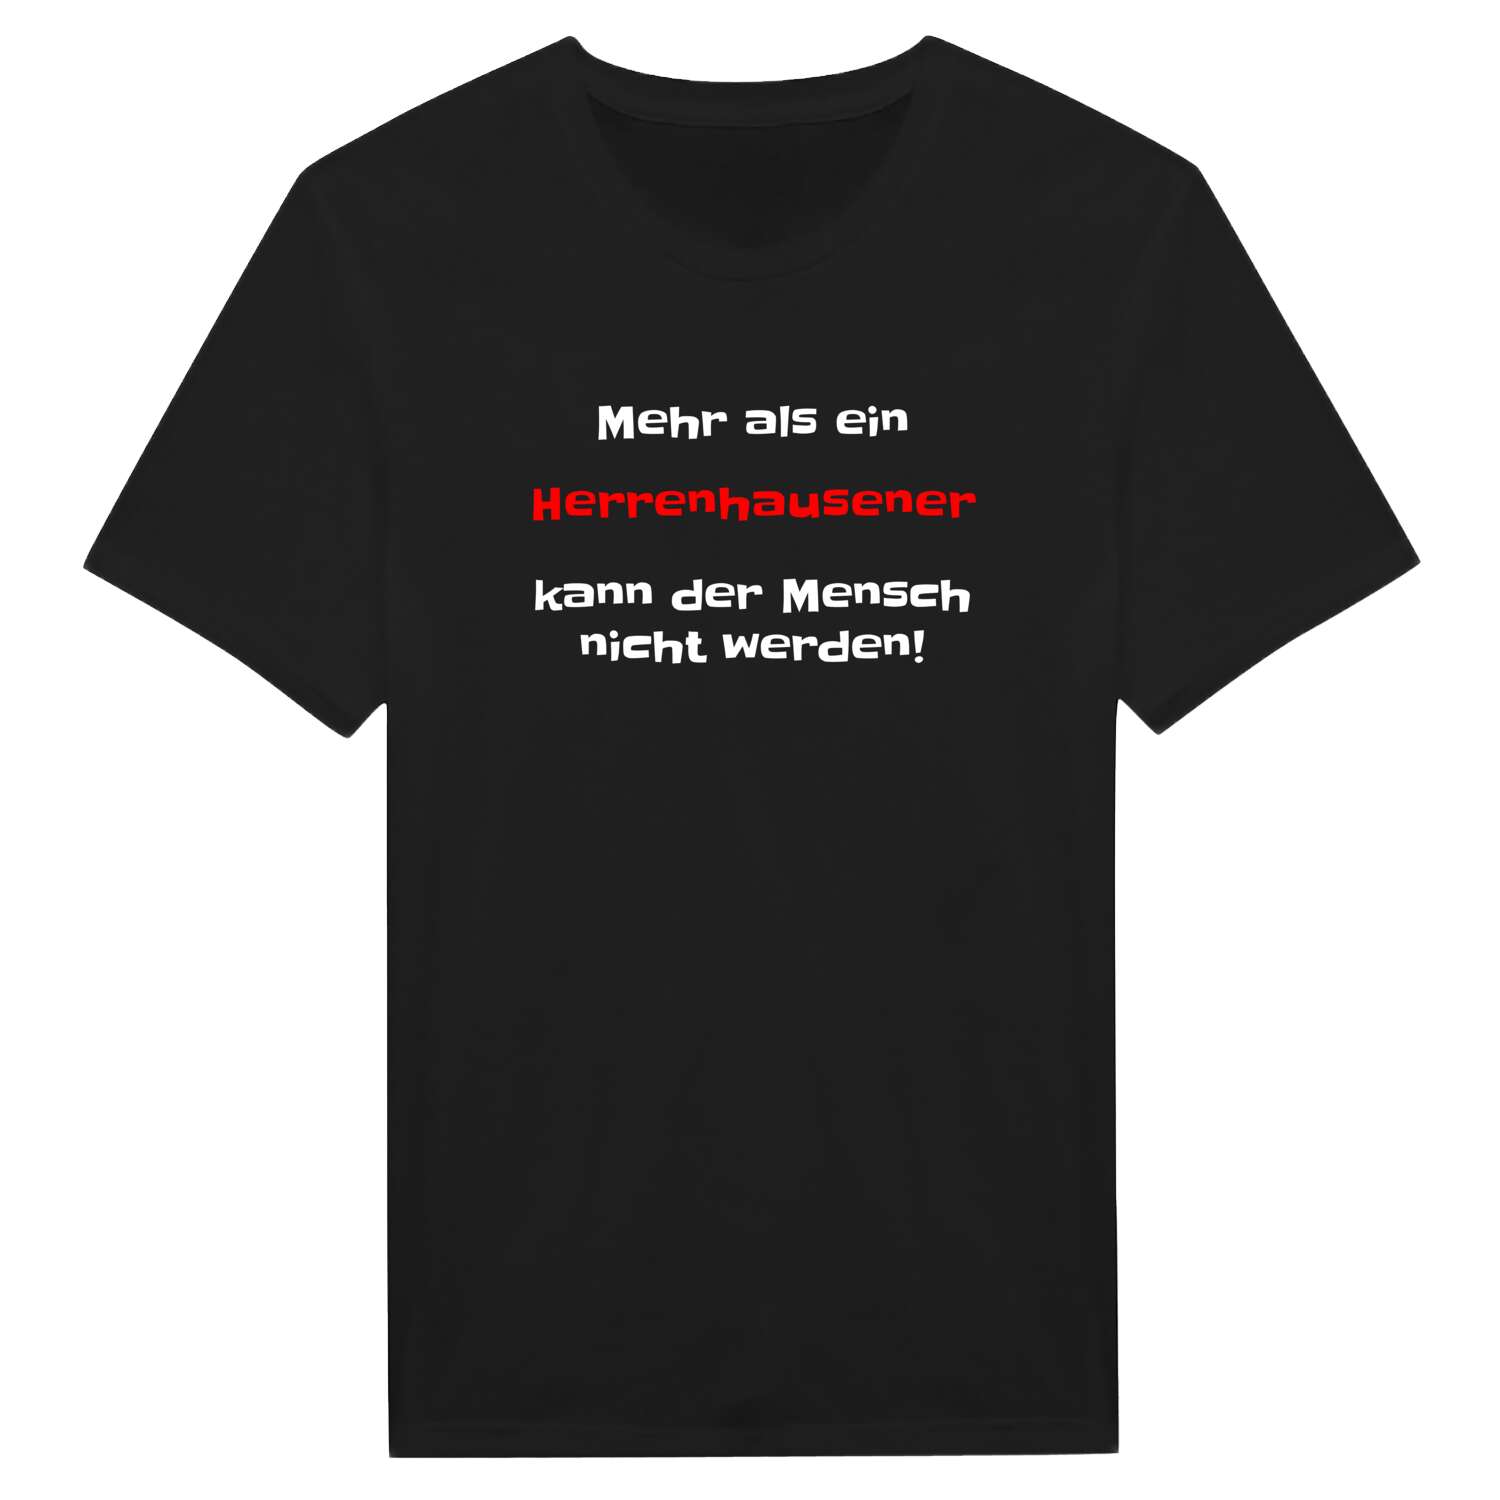 Herrenhausen T-Shirt »Mehr als ein«